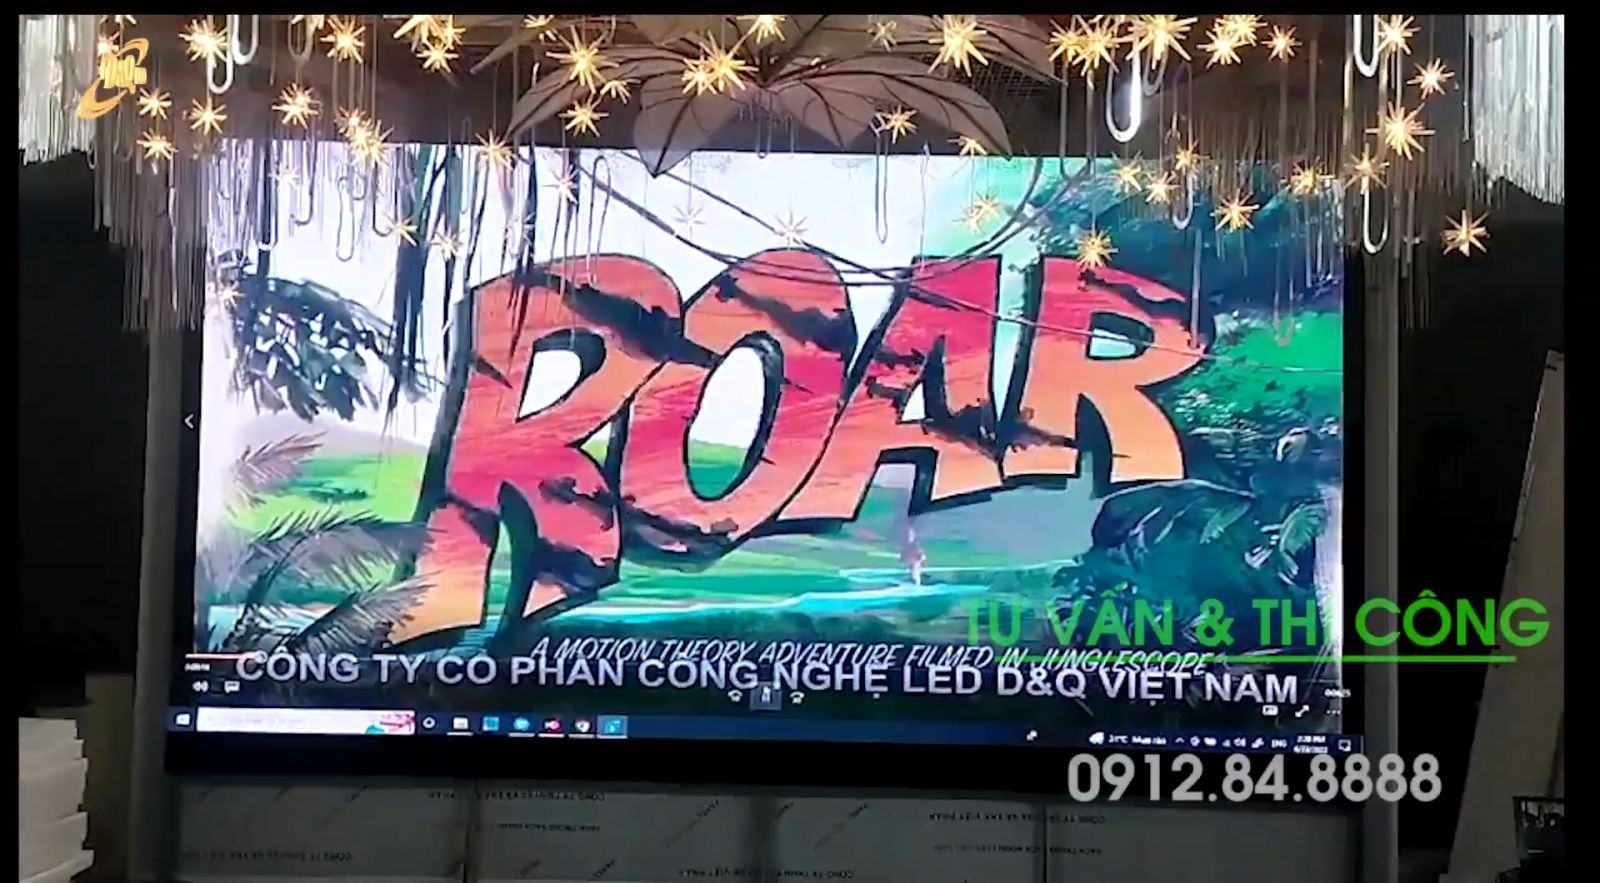 Led D&Q VietNam Thi Công màn hình LED trong Siêu Thị Hiền Lương